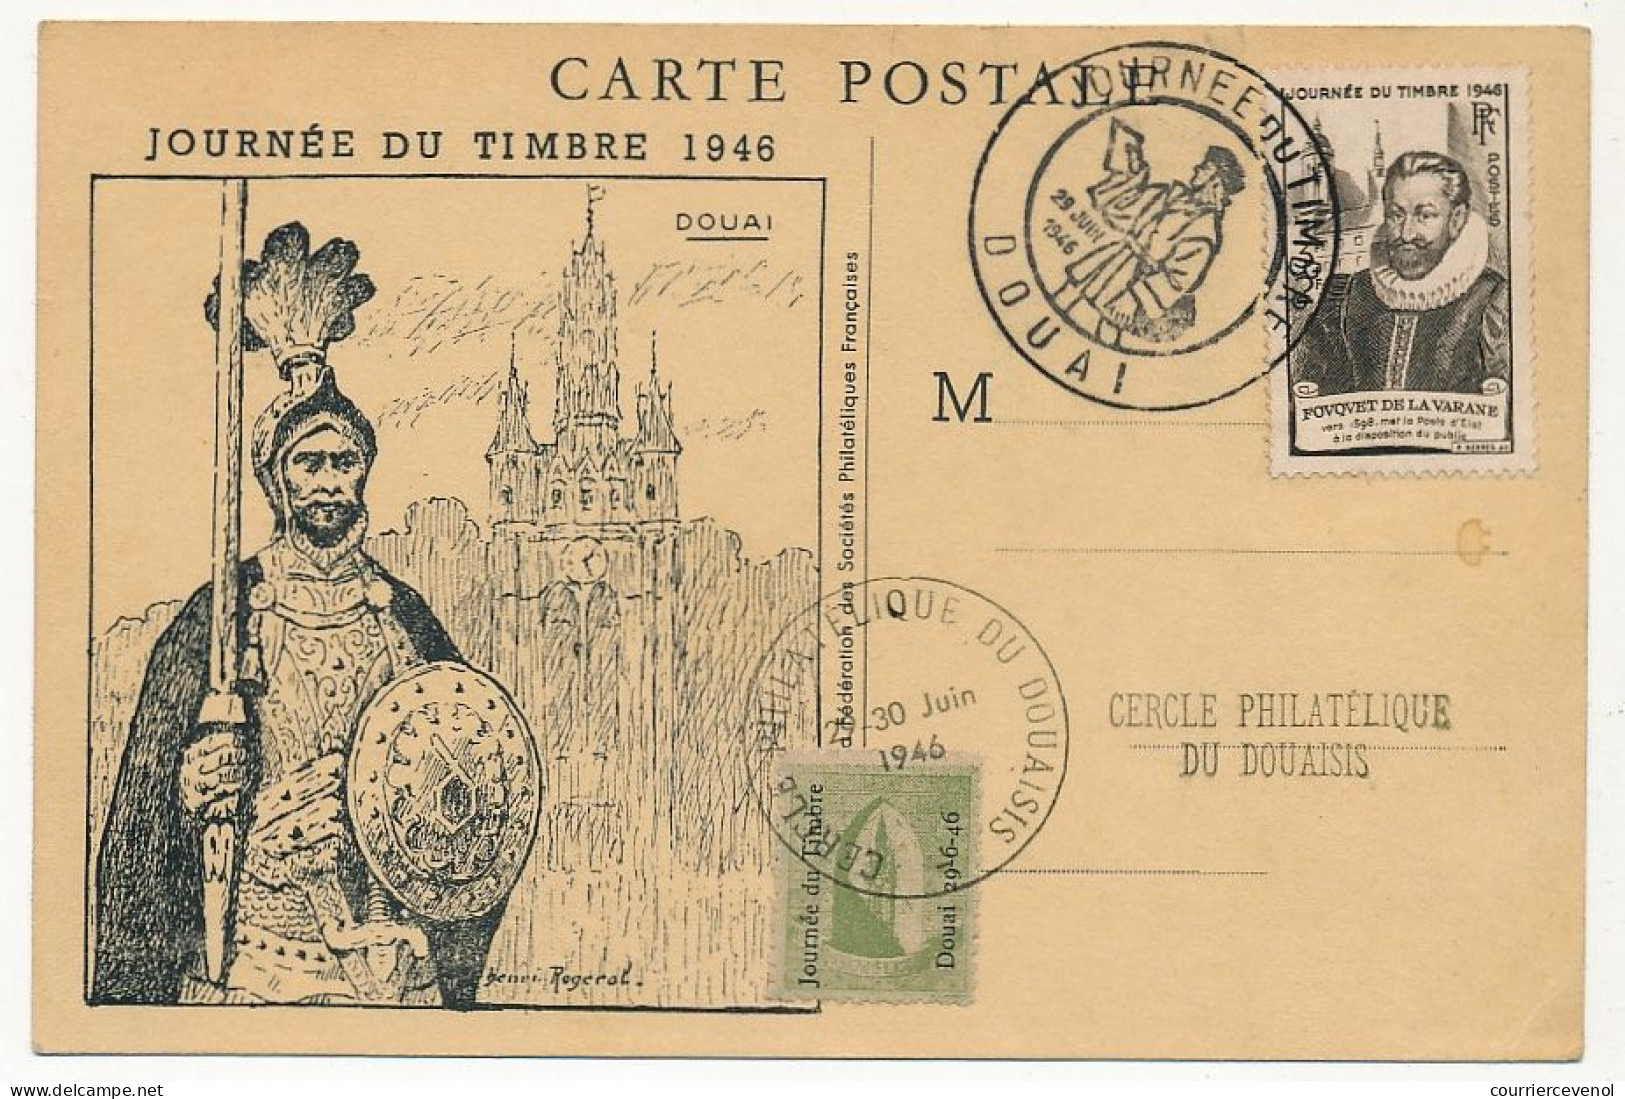 FRANCE => DOUAI - Carte Locale "Journée Du Timbre" 1946 Timbre Fouquet De La Varane + Vignette Locale - Covers & Documents